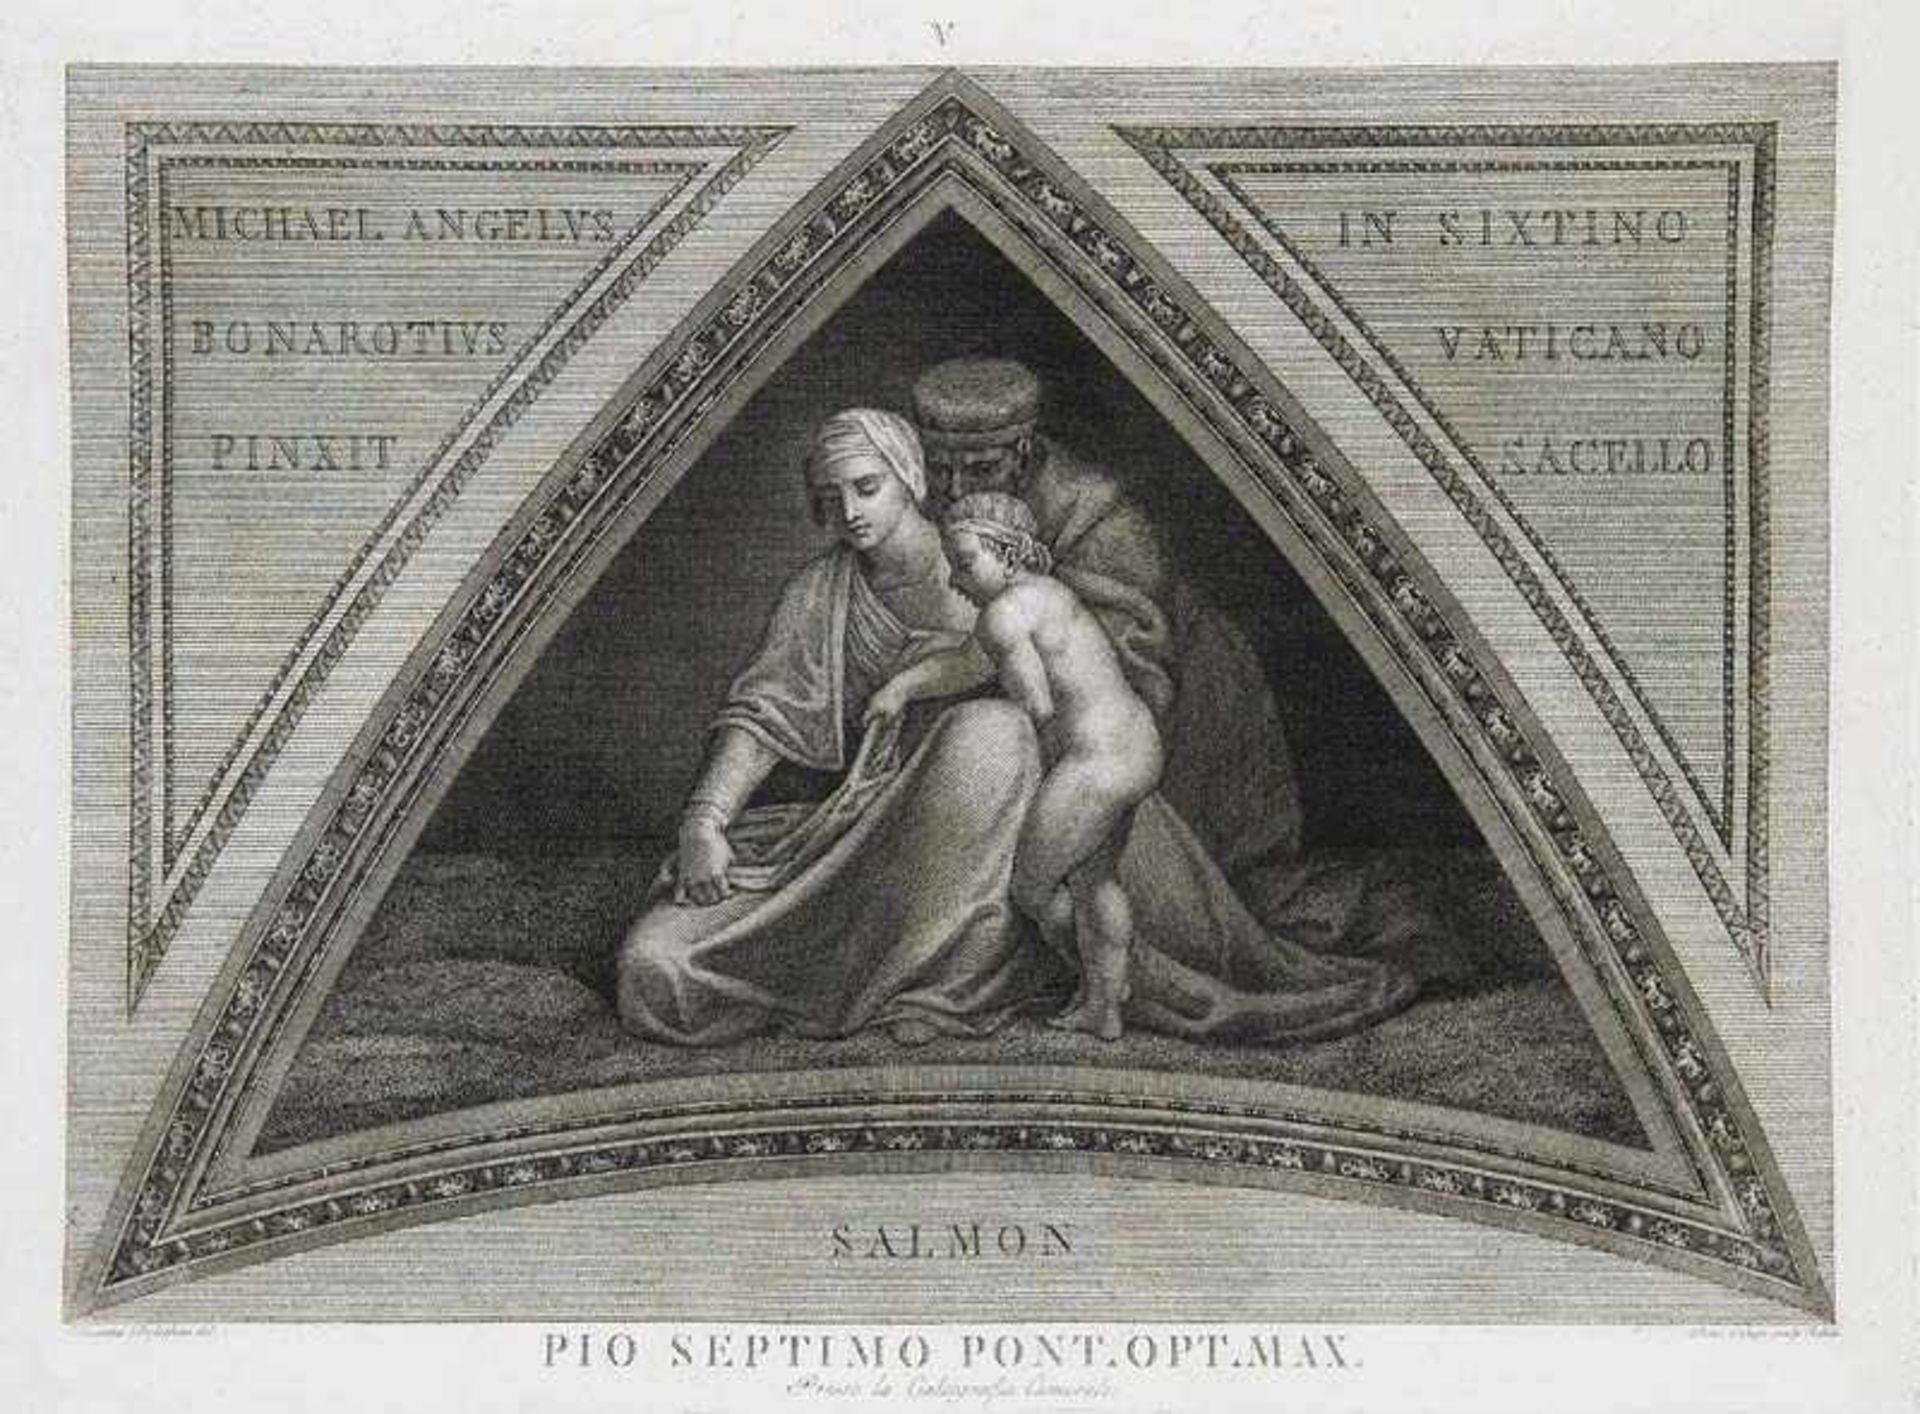 Nach - Michelangelo. Portfolio von 28 prachtvollen großformatigen Kupferstichen der Kalkographie Rom